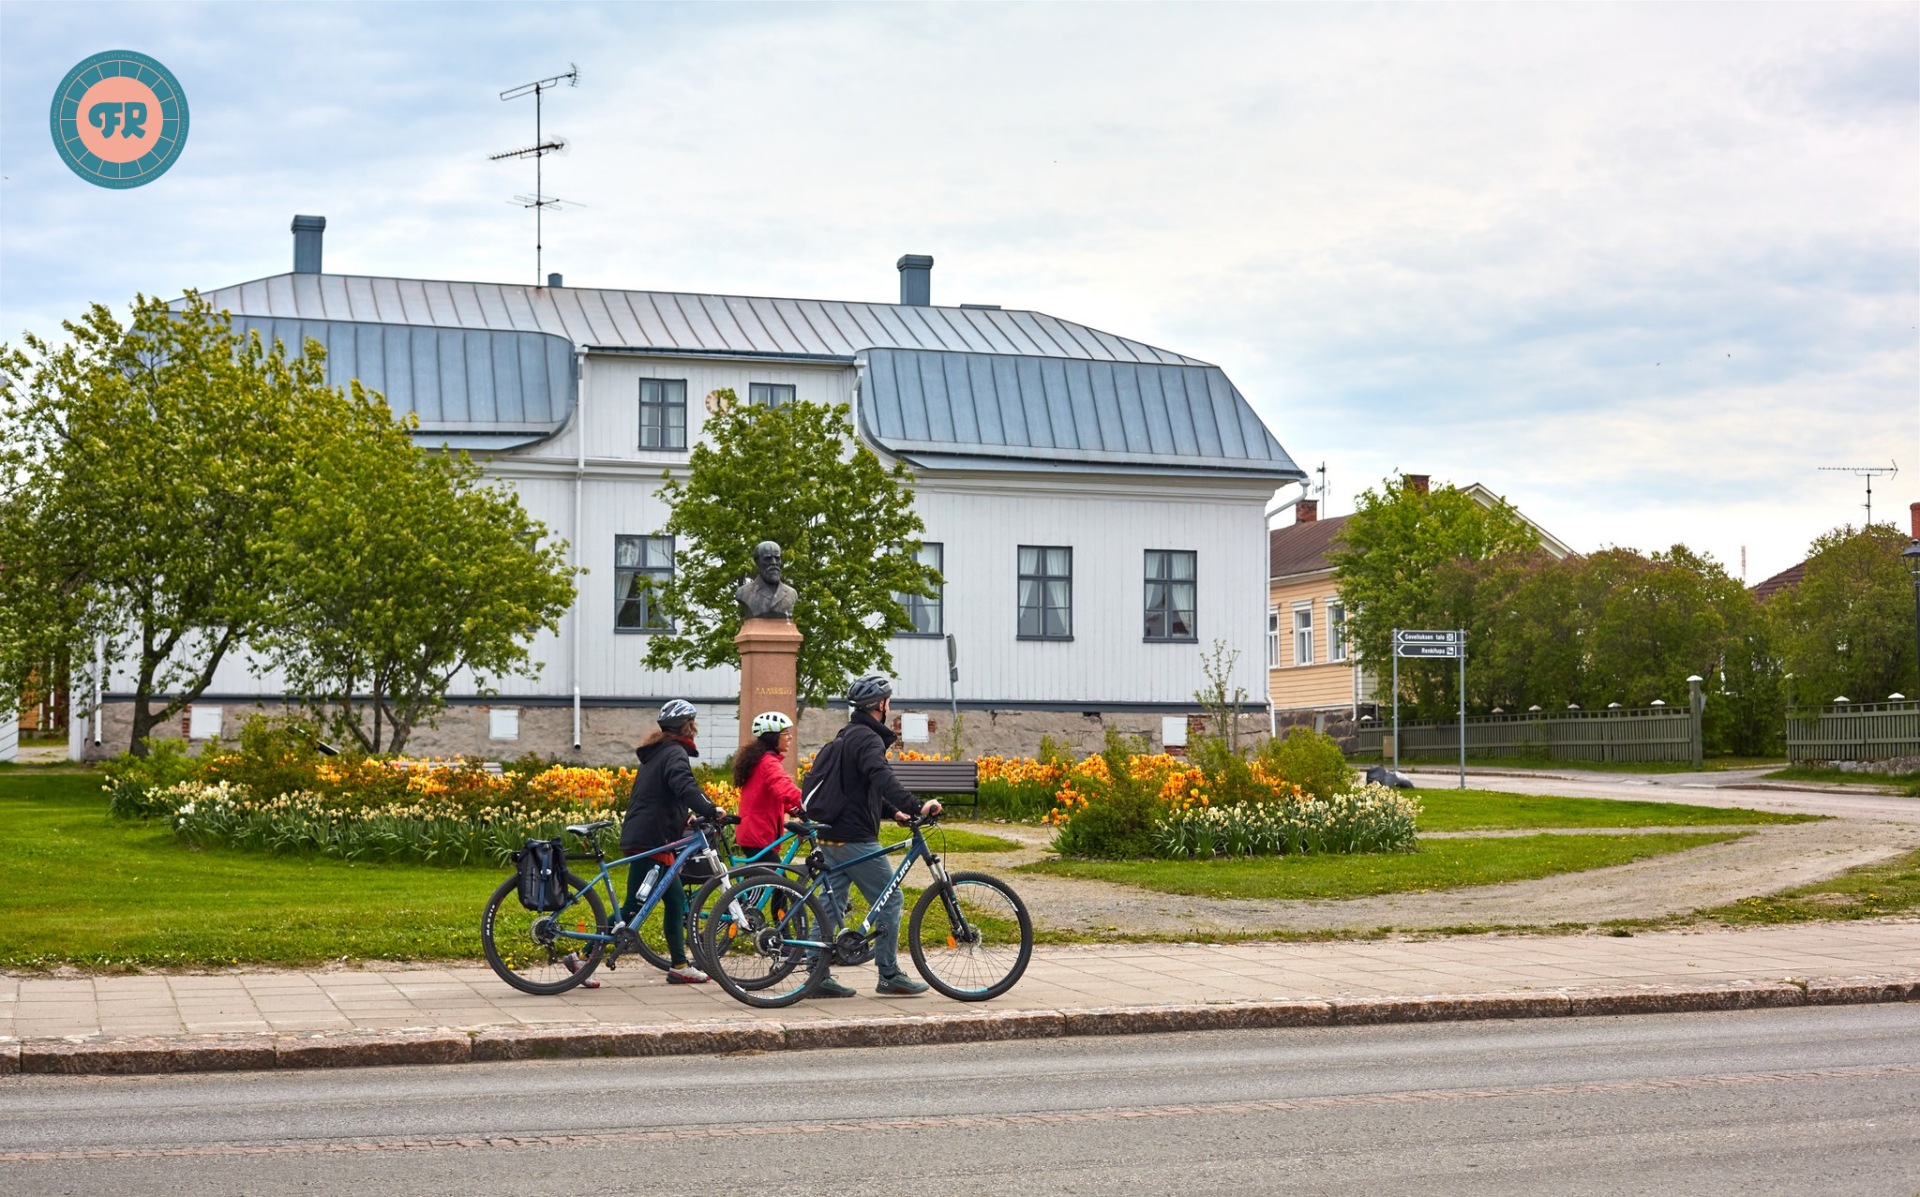 Cyclists walking their bikes on Rantakatu in Old Town Raahe.